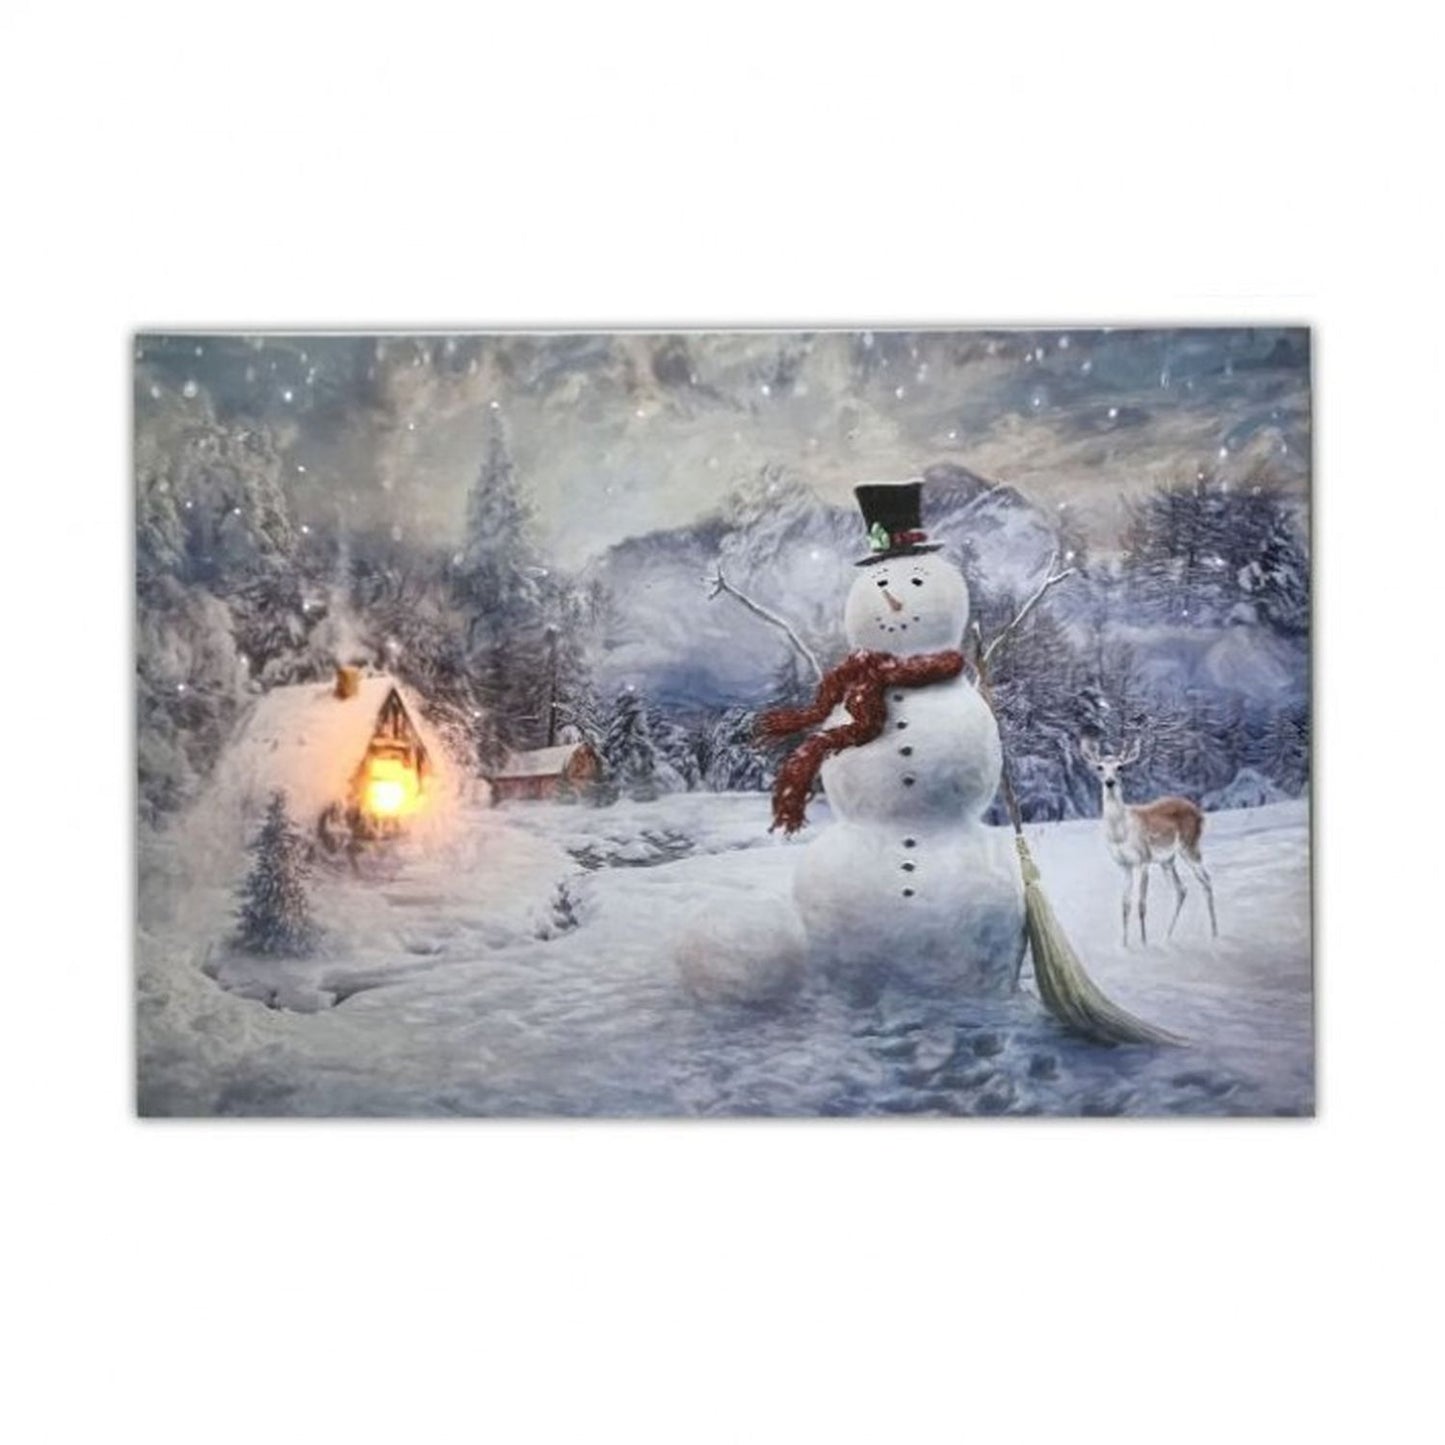 Regency International 16 X 24" Battery/Timer Snowman Winter Scene